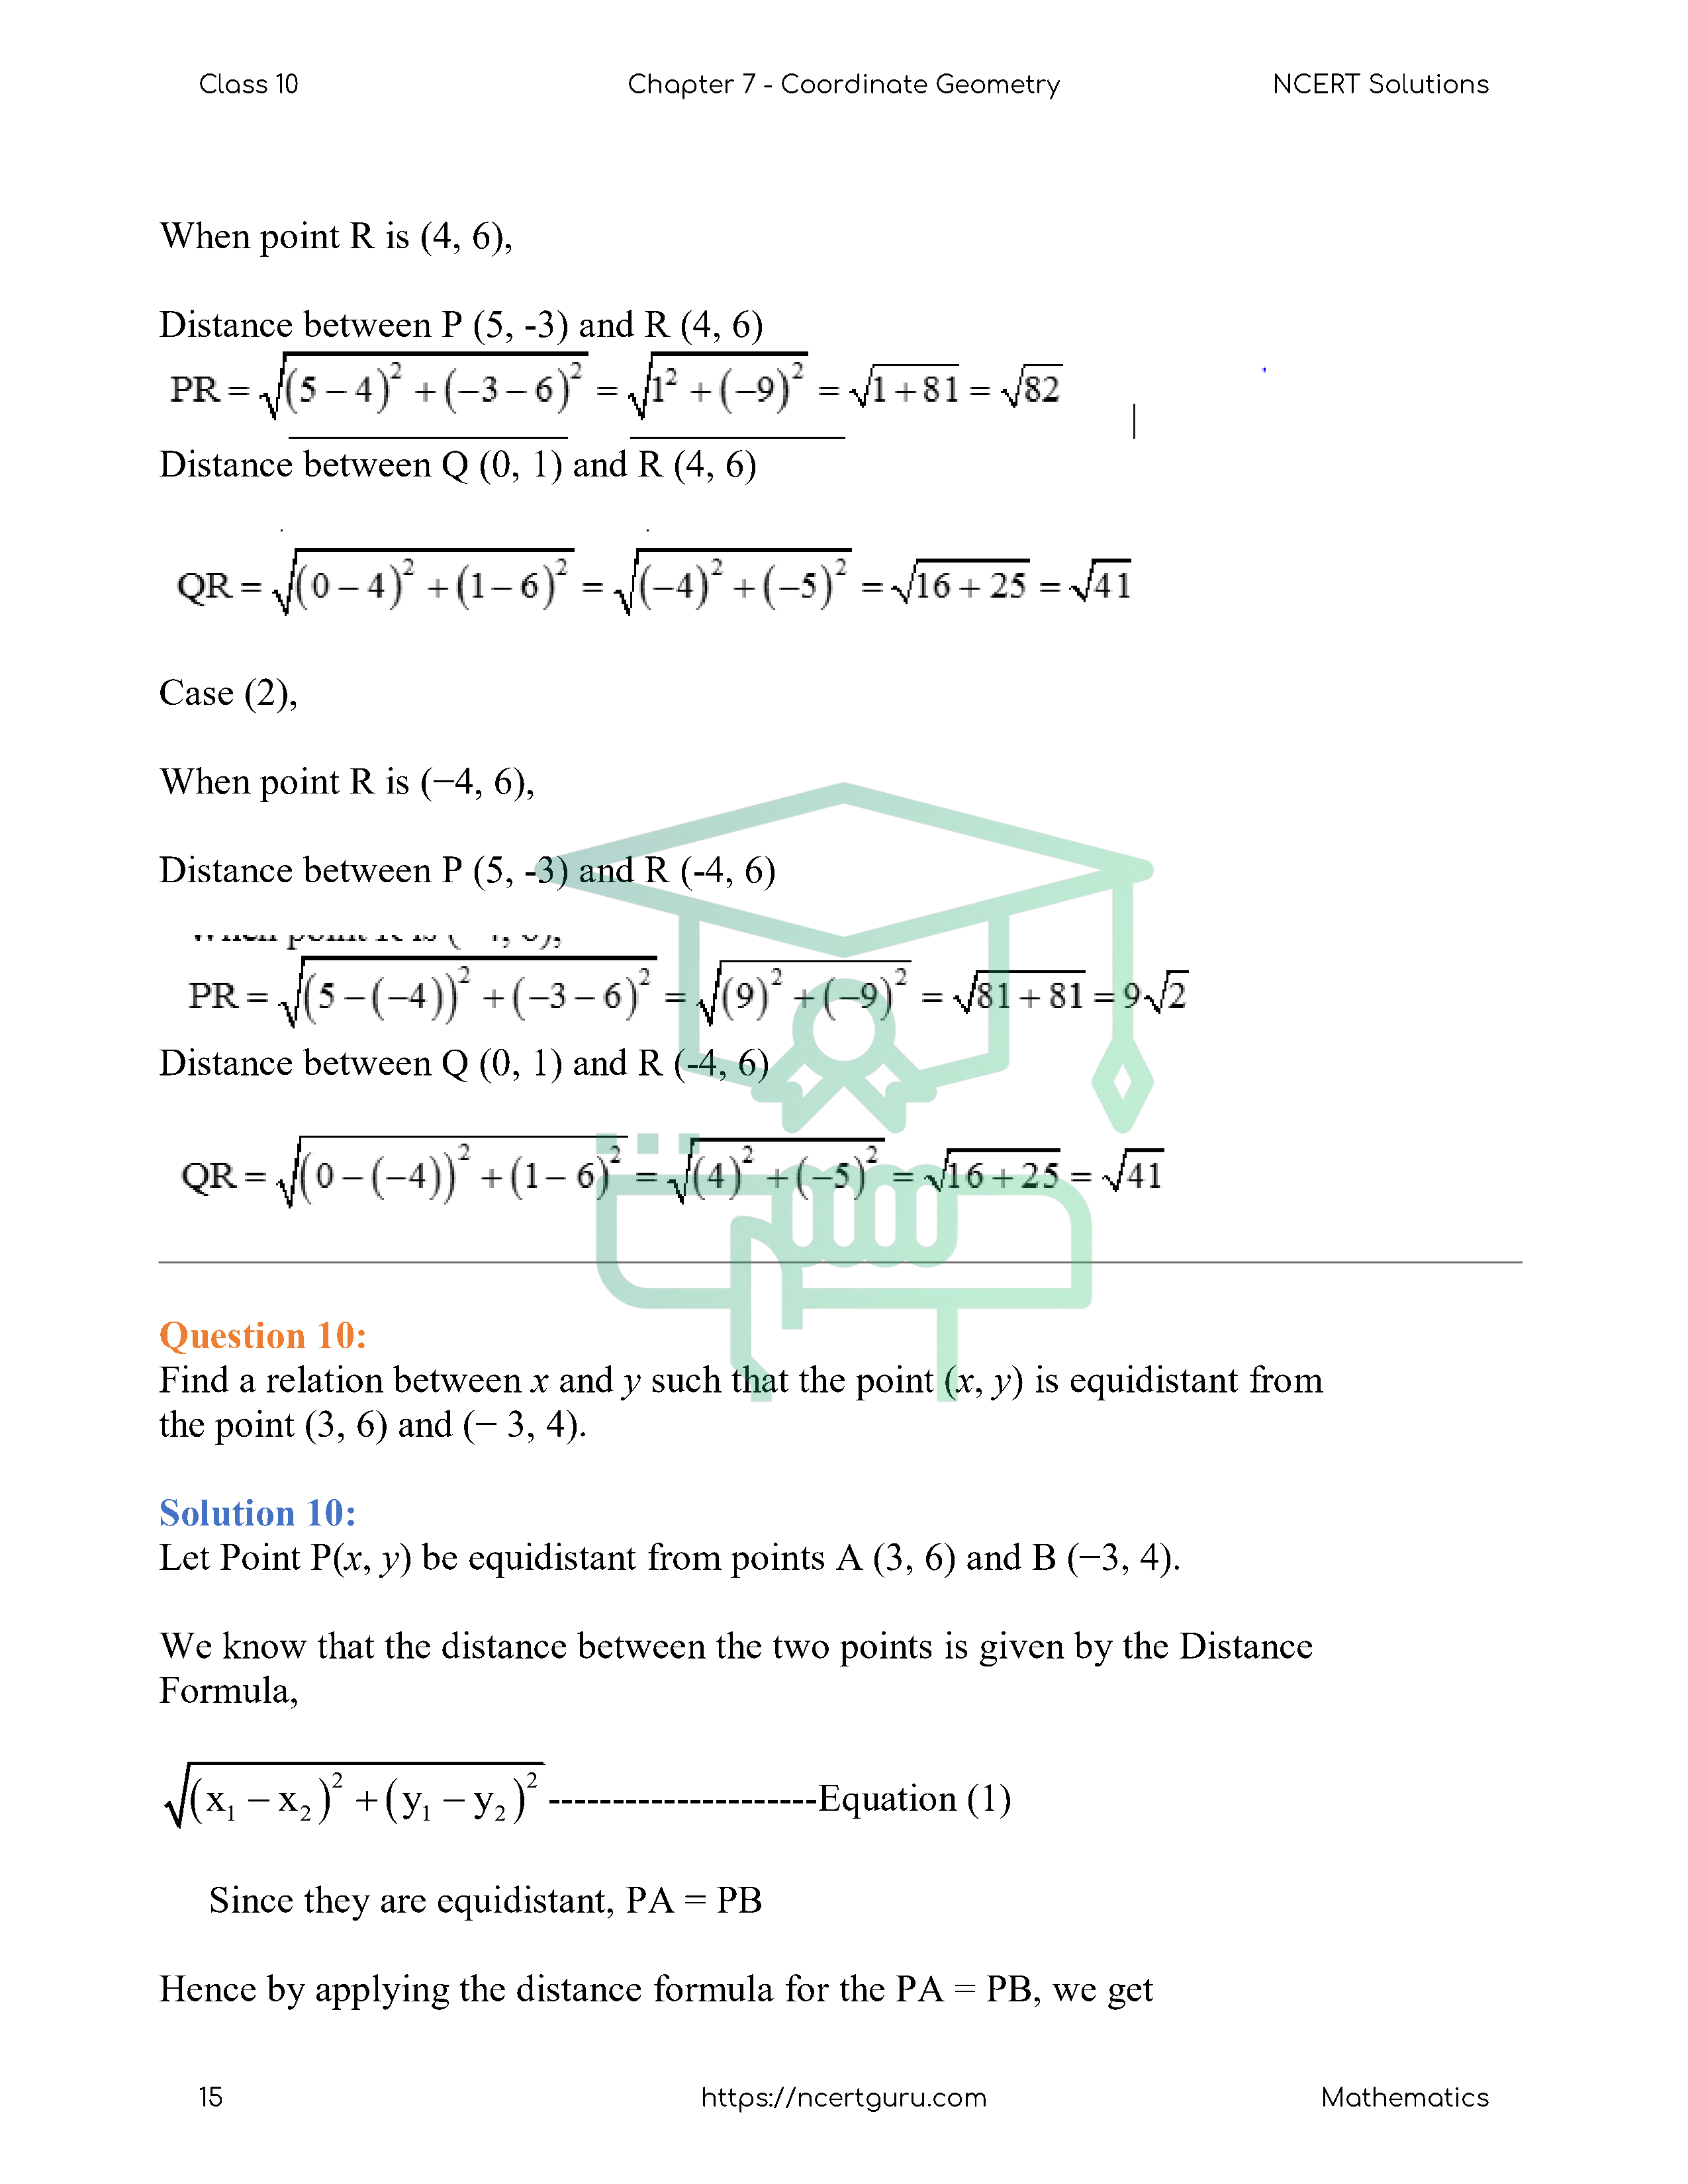 NCERT Solutions for Class 10 Maths Chapter 7